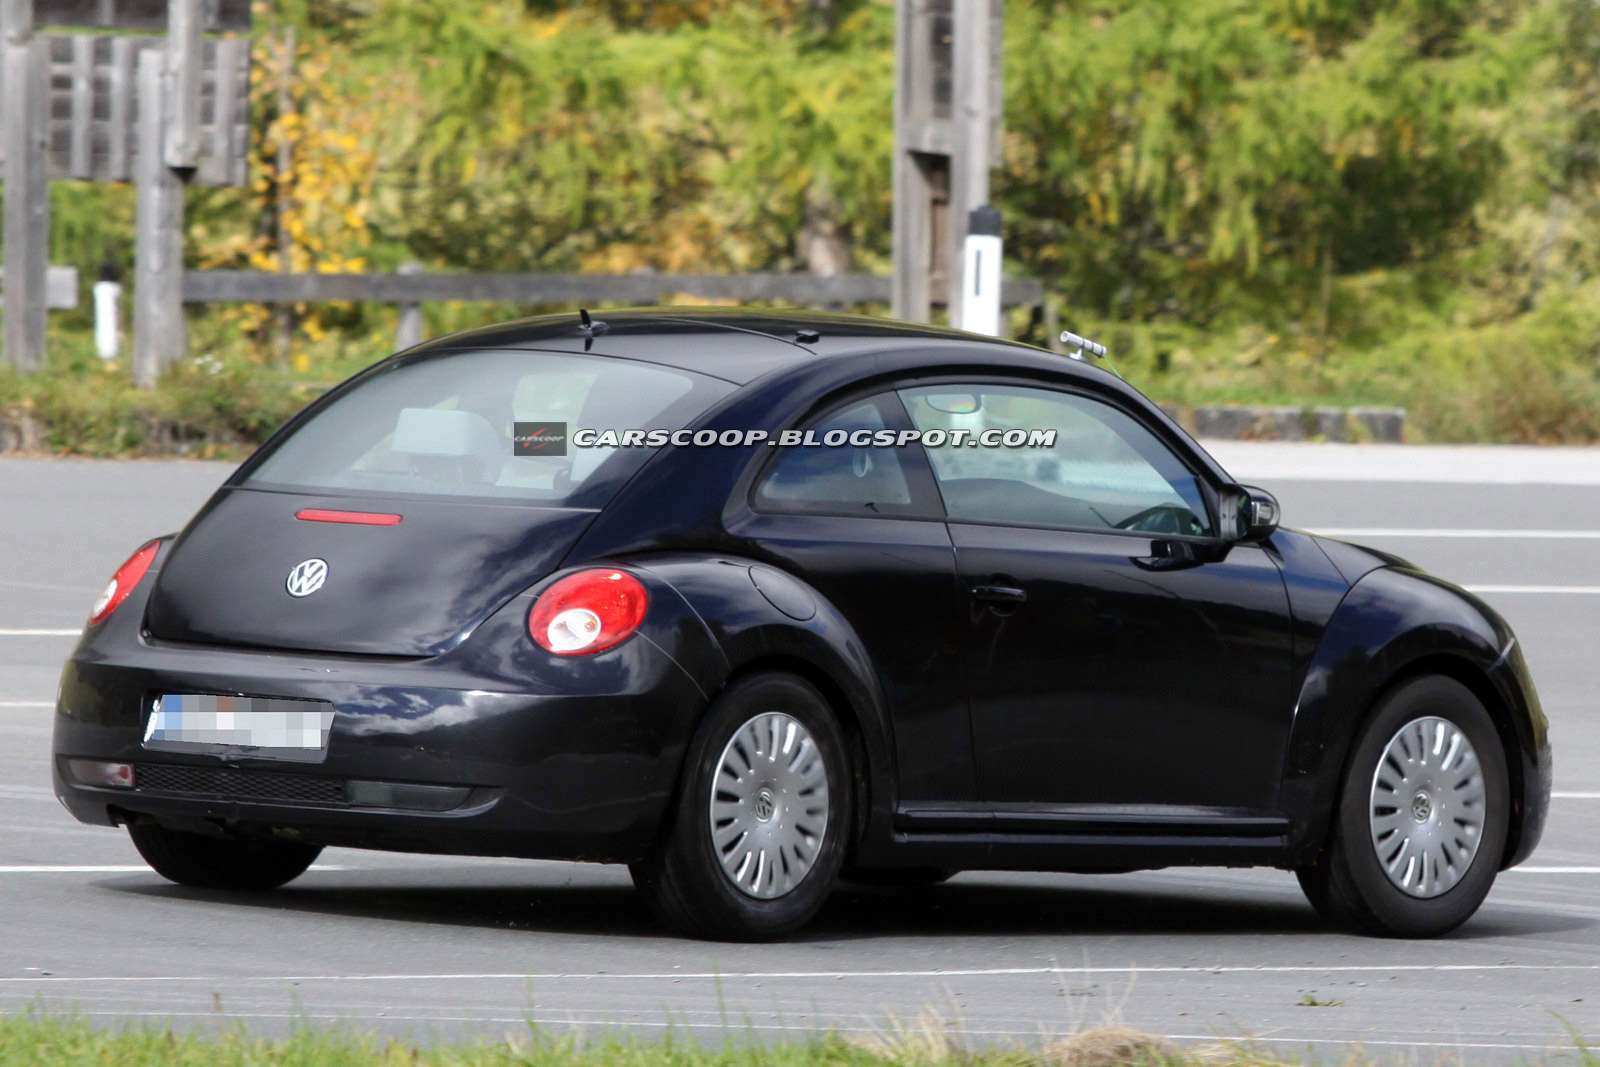 VW New Beetle 2012 szpieg pazdziernik 2010